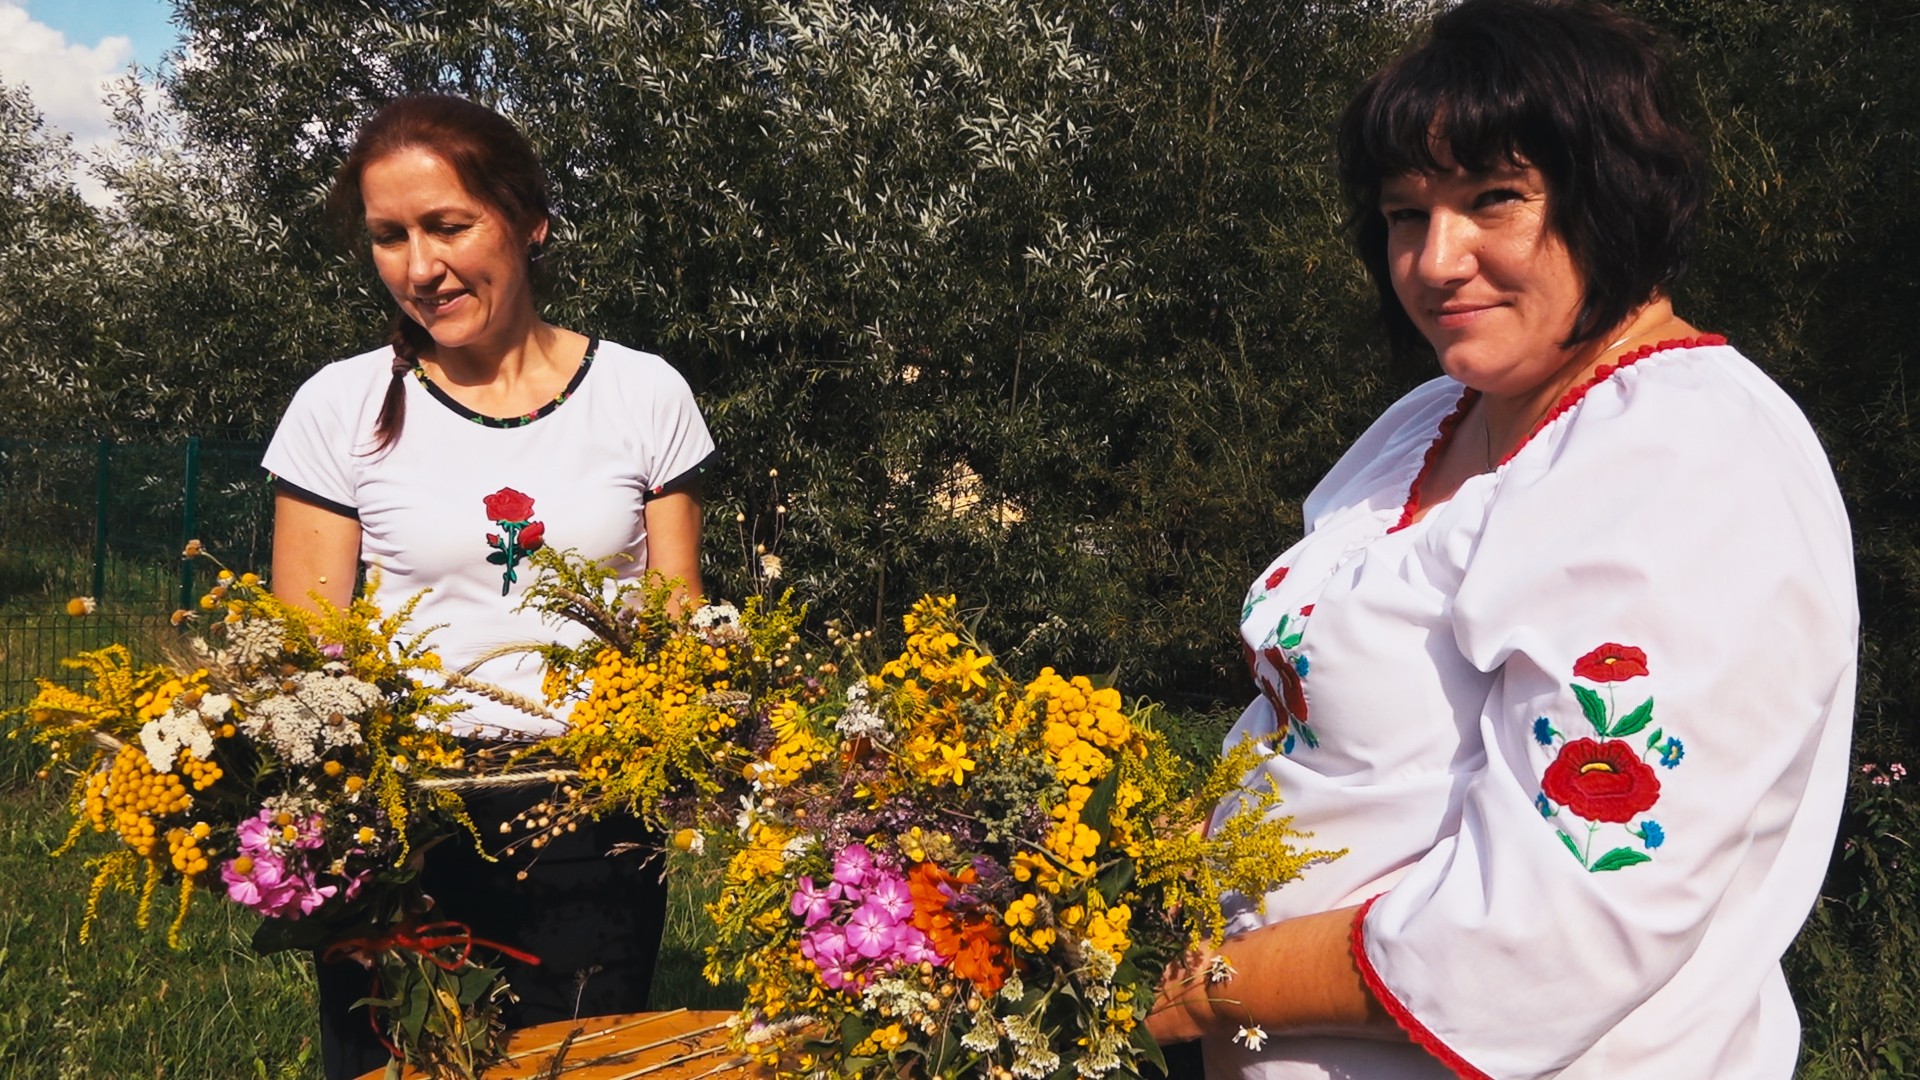 dwie kobiety w białych bluzkach prezentują bukiety z żółtych, fioletowych i pomarańczowych kwiatów